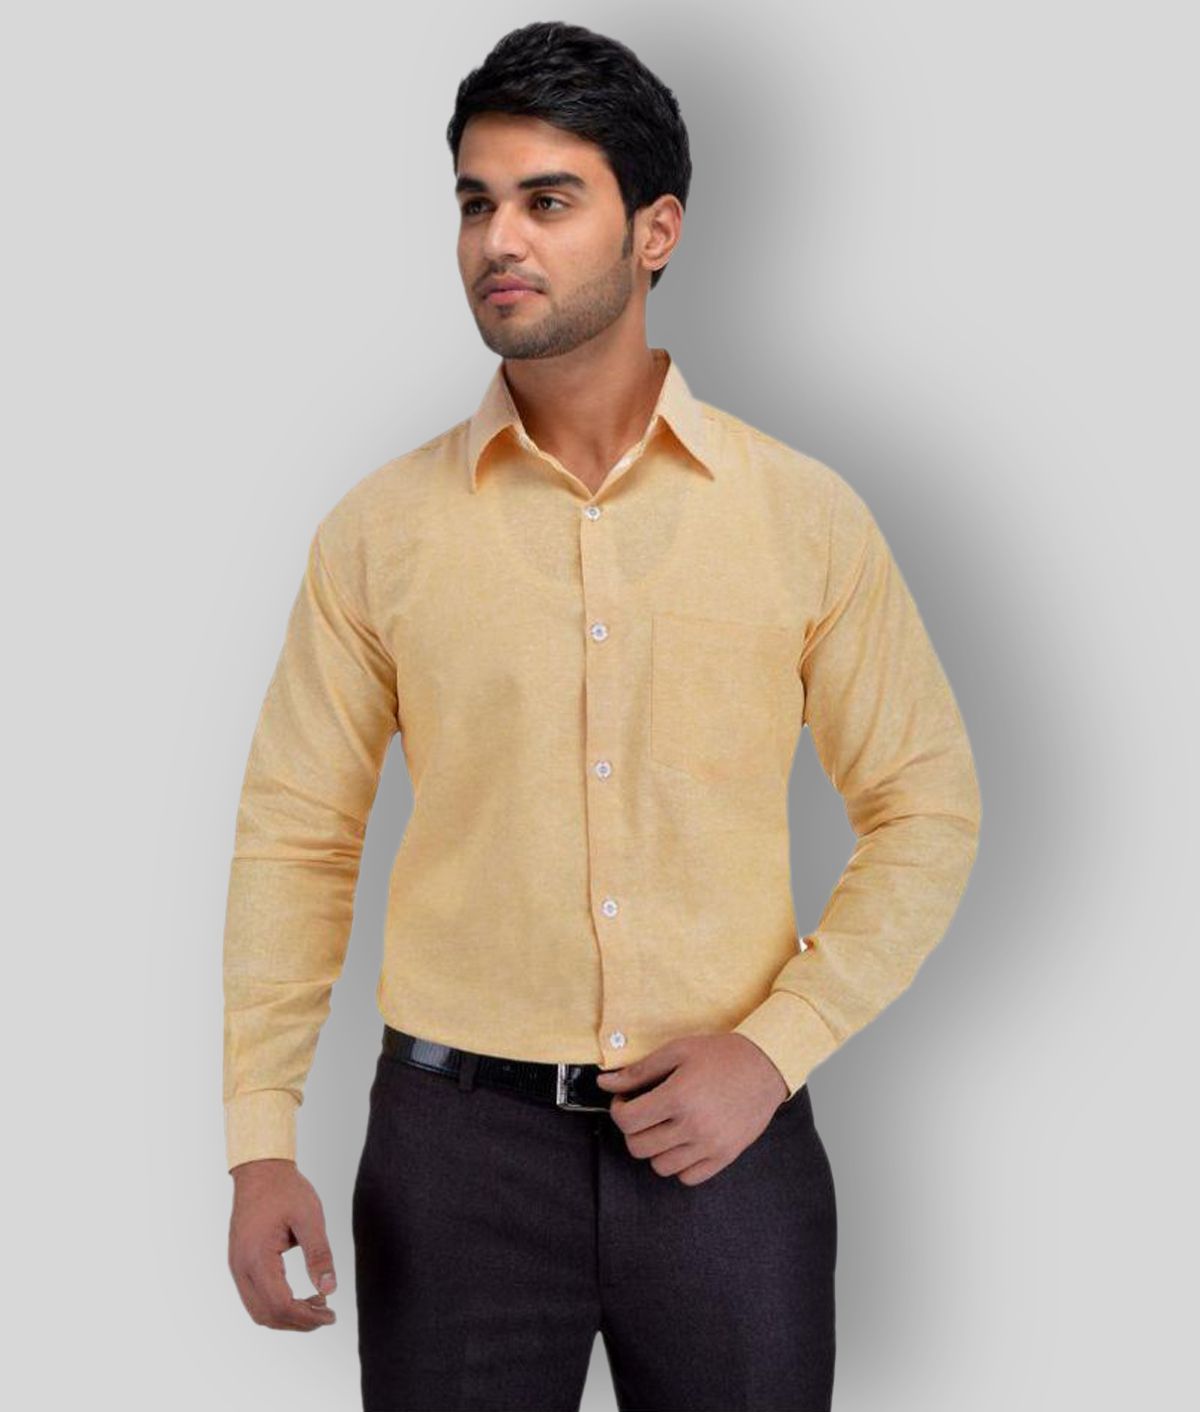     			DESHBANDHU DBK - Beige Cotton Regular Fit Men's Formal Shirt (Pack of 1)